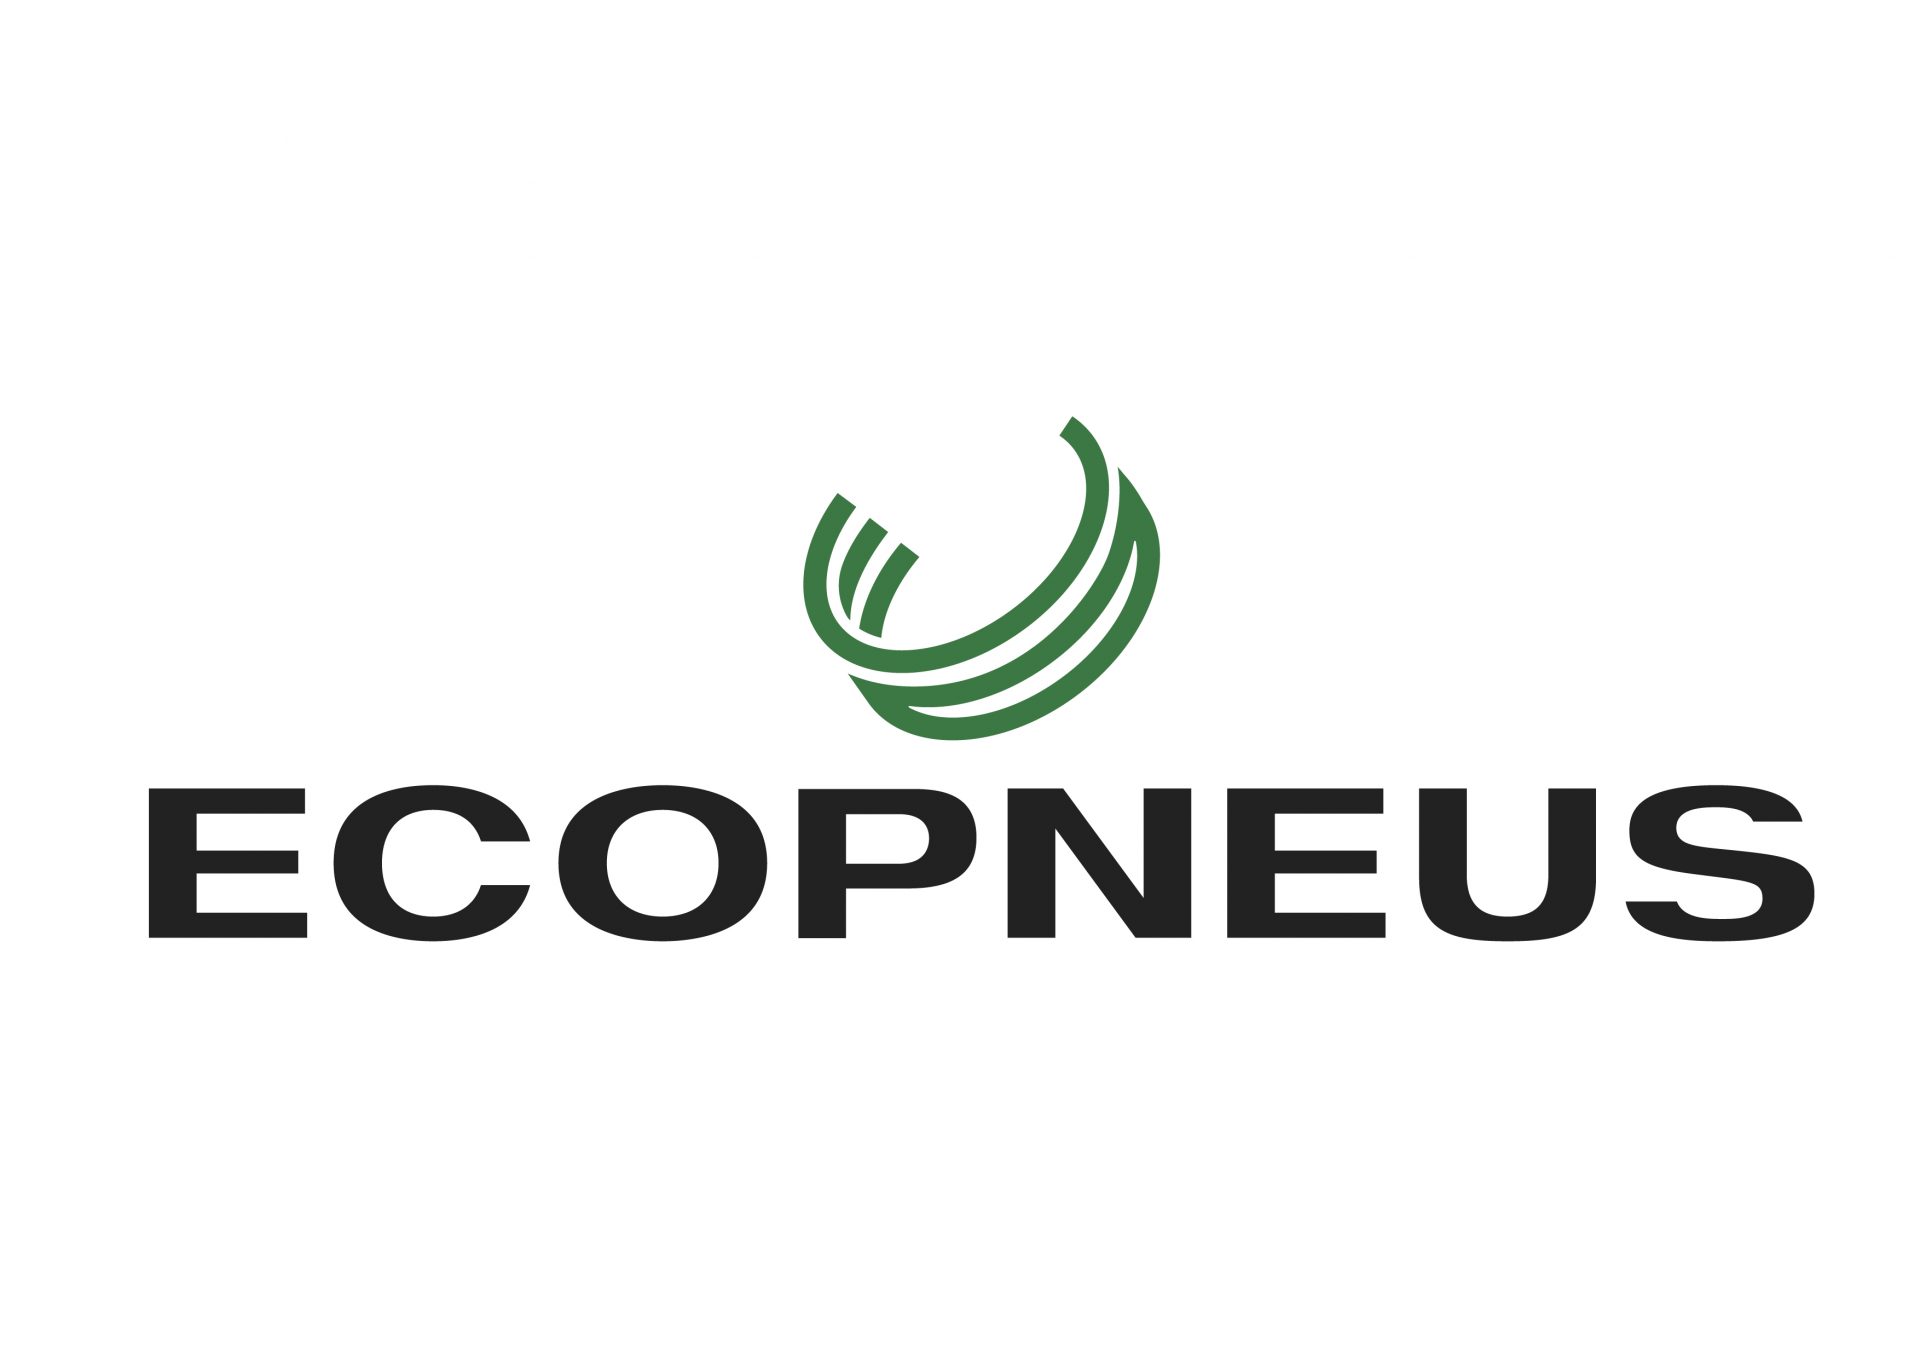 Ecopneus Rebrands